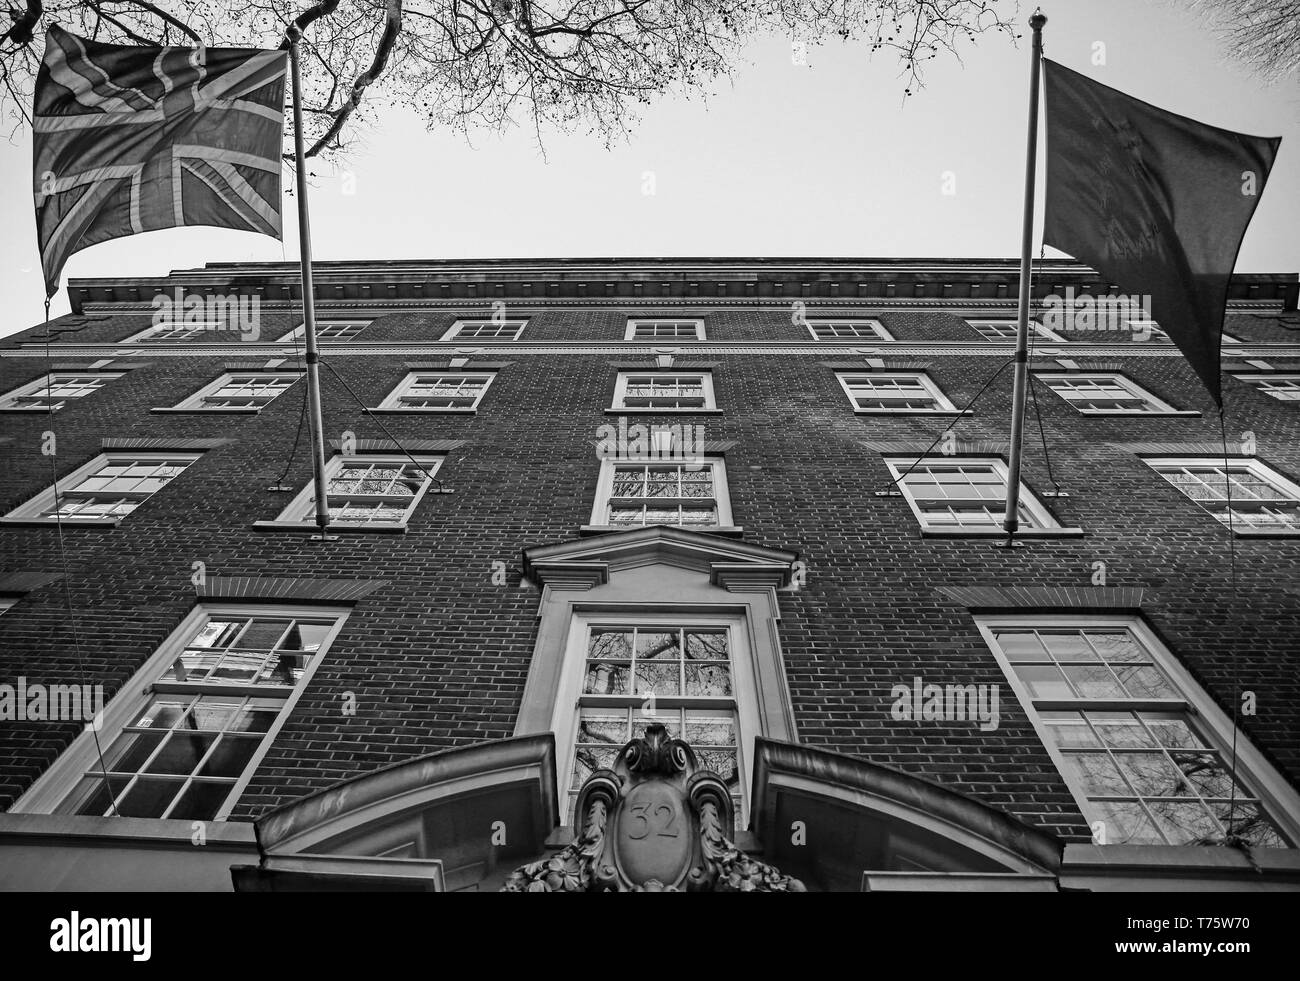 Un drapeau de l'Union britannique, AKA Union Jack, vole avec l'Union européenne (UE) sont visibles à l'extérieur du pavillon, l'Europa House. Londres, R.-U. Banque D'Images